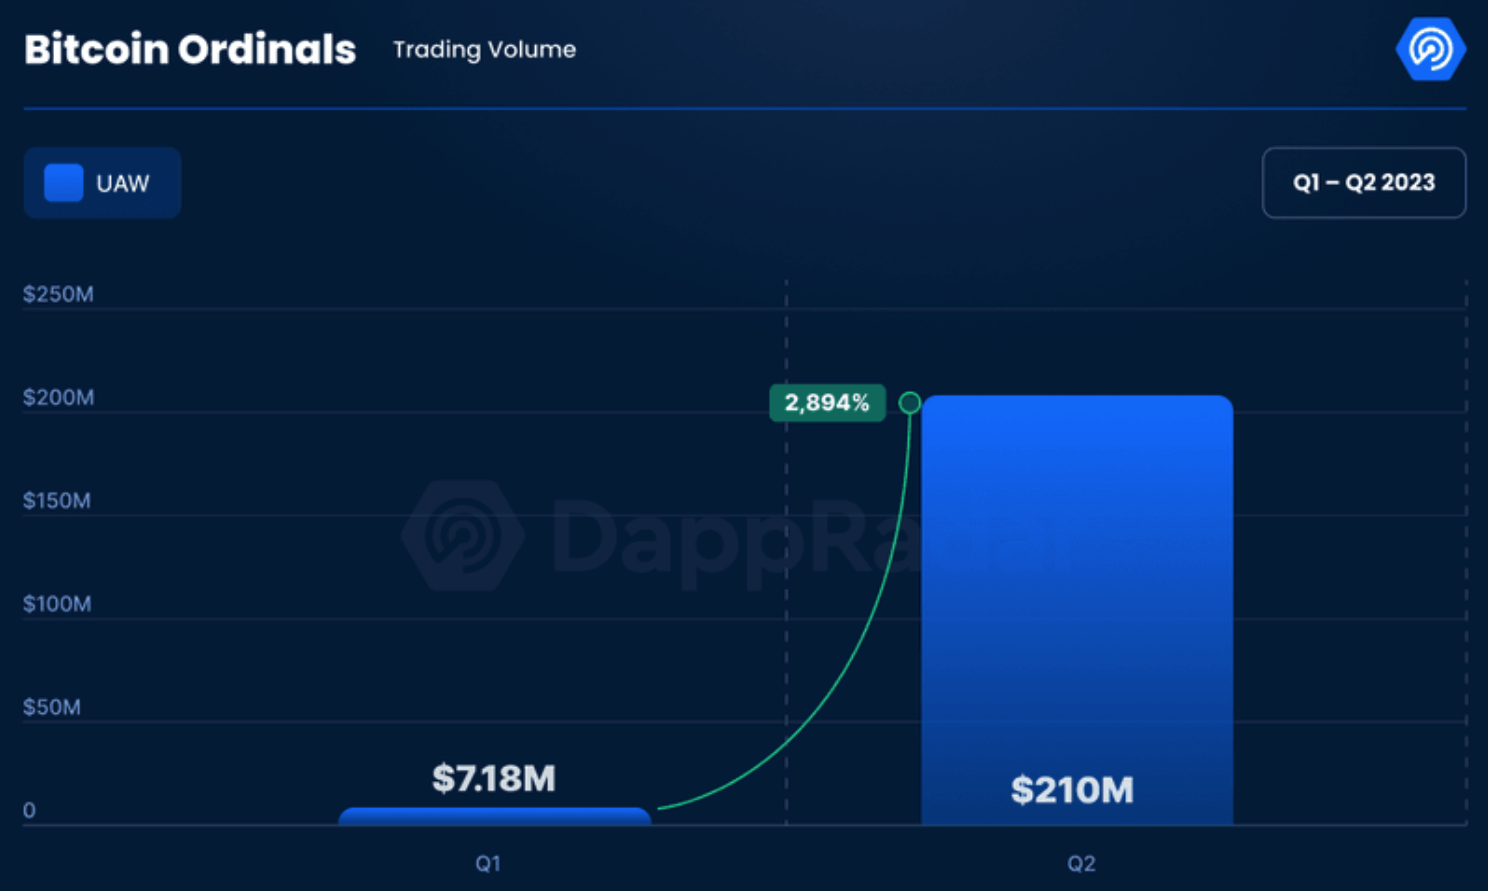 El volumen de Bitcoin Ordinals aumentó exponencialmente en el segundo trimestre, y Vitalik Buterin espera que los desarrolladores de Ethereum inspiren a los desarrolladores de Bitcoin a hacer más.